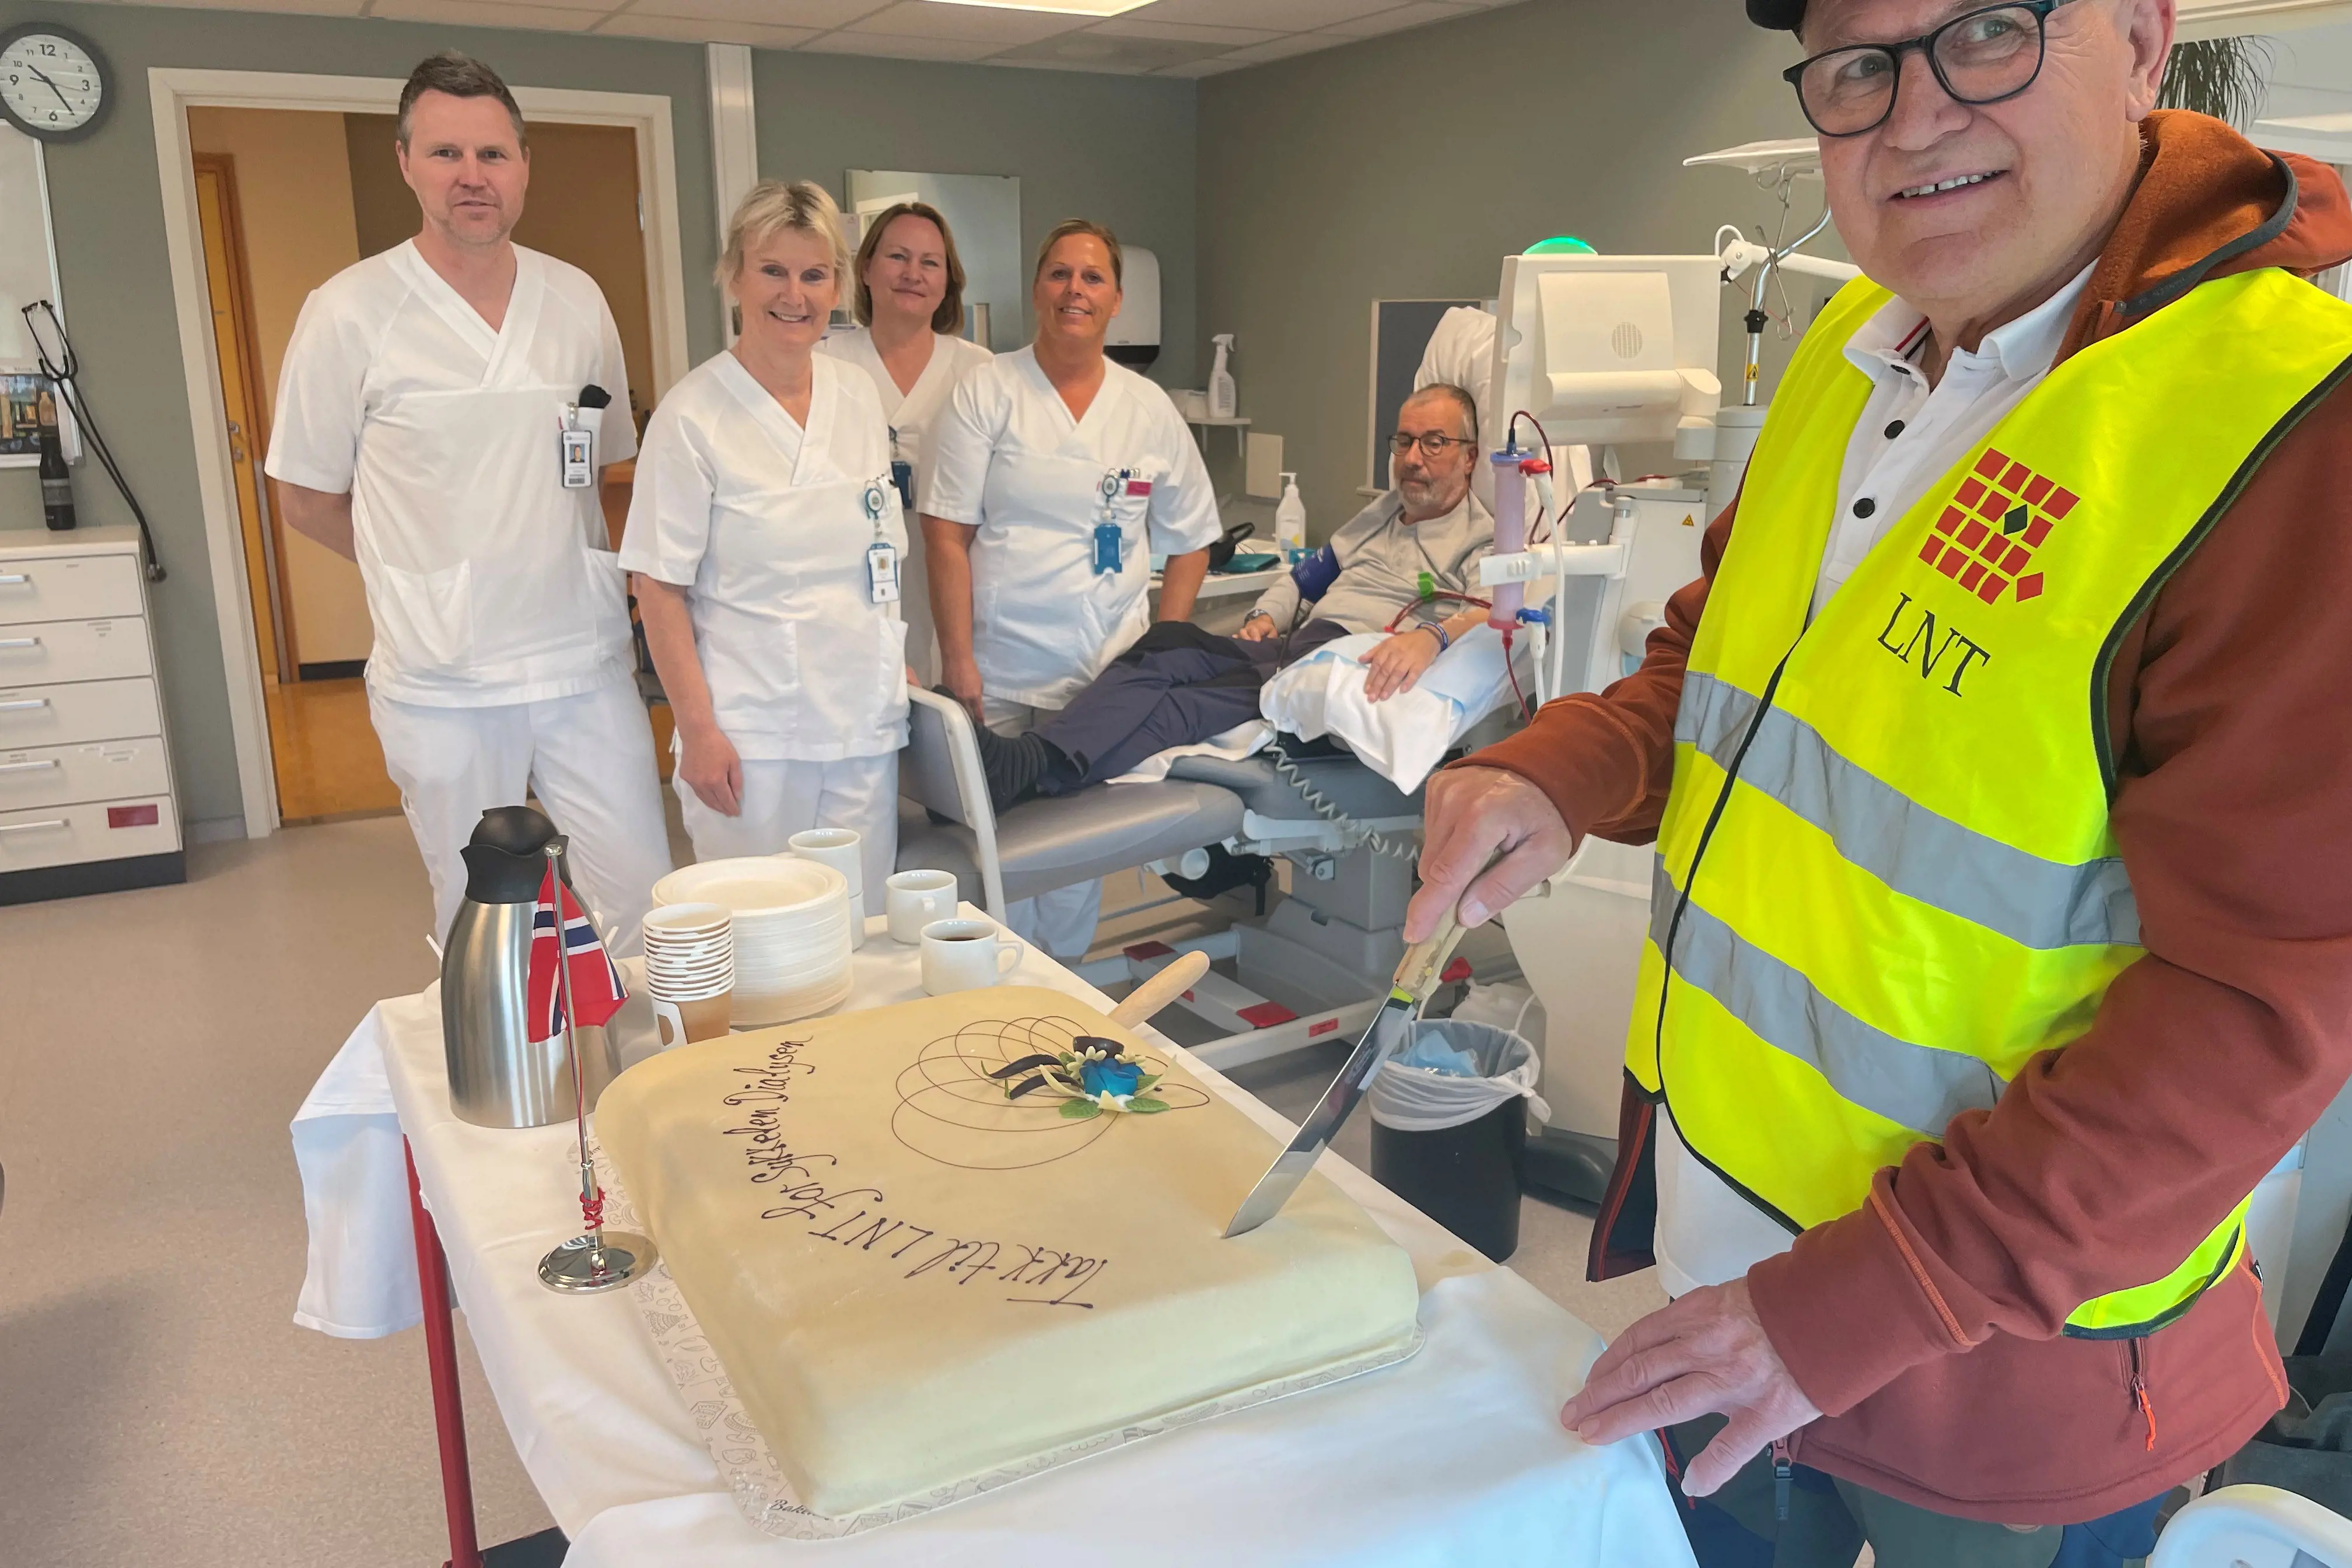 Fylkesleder i LNT skjærer kake til ansatte på dialyseavdelingen på Lillehammer